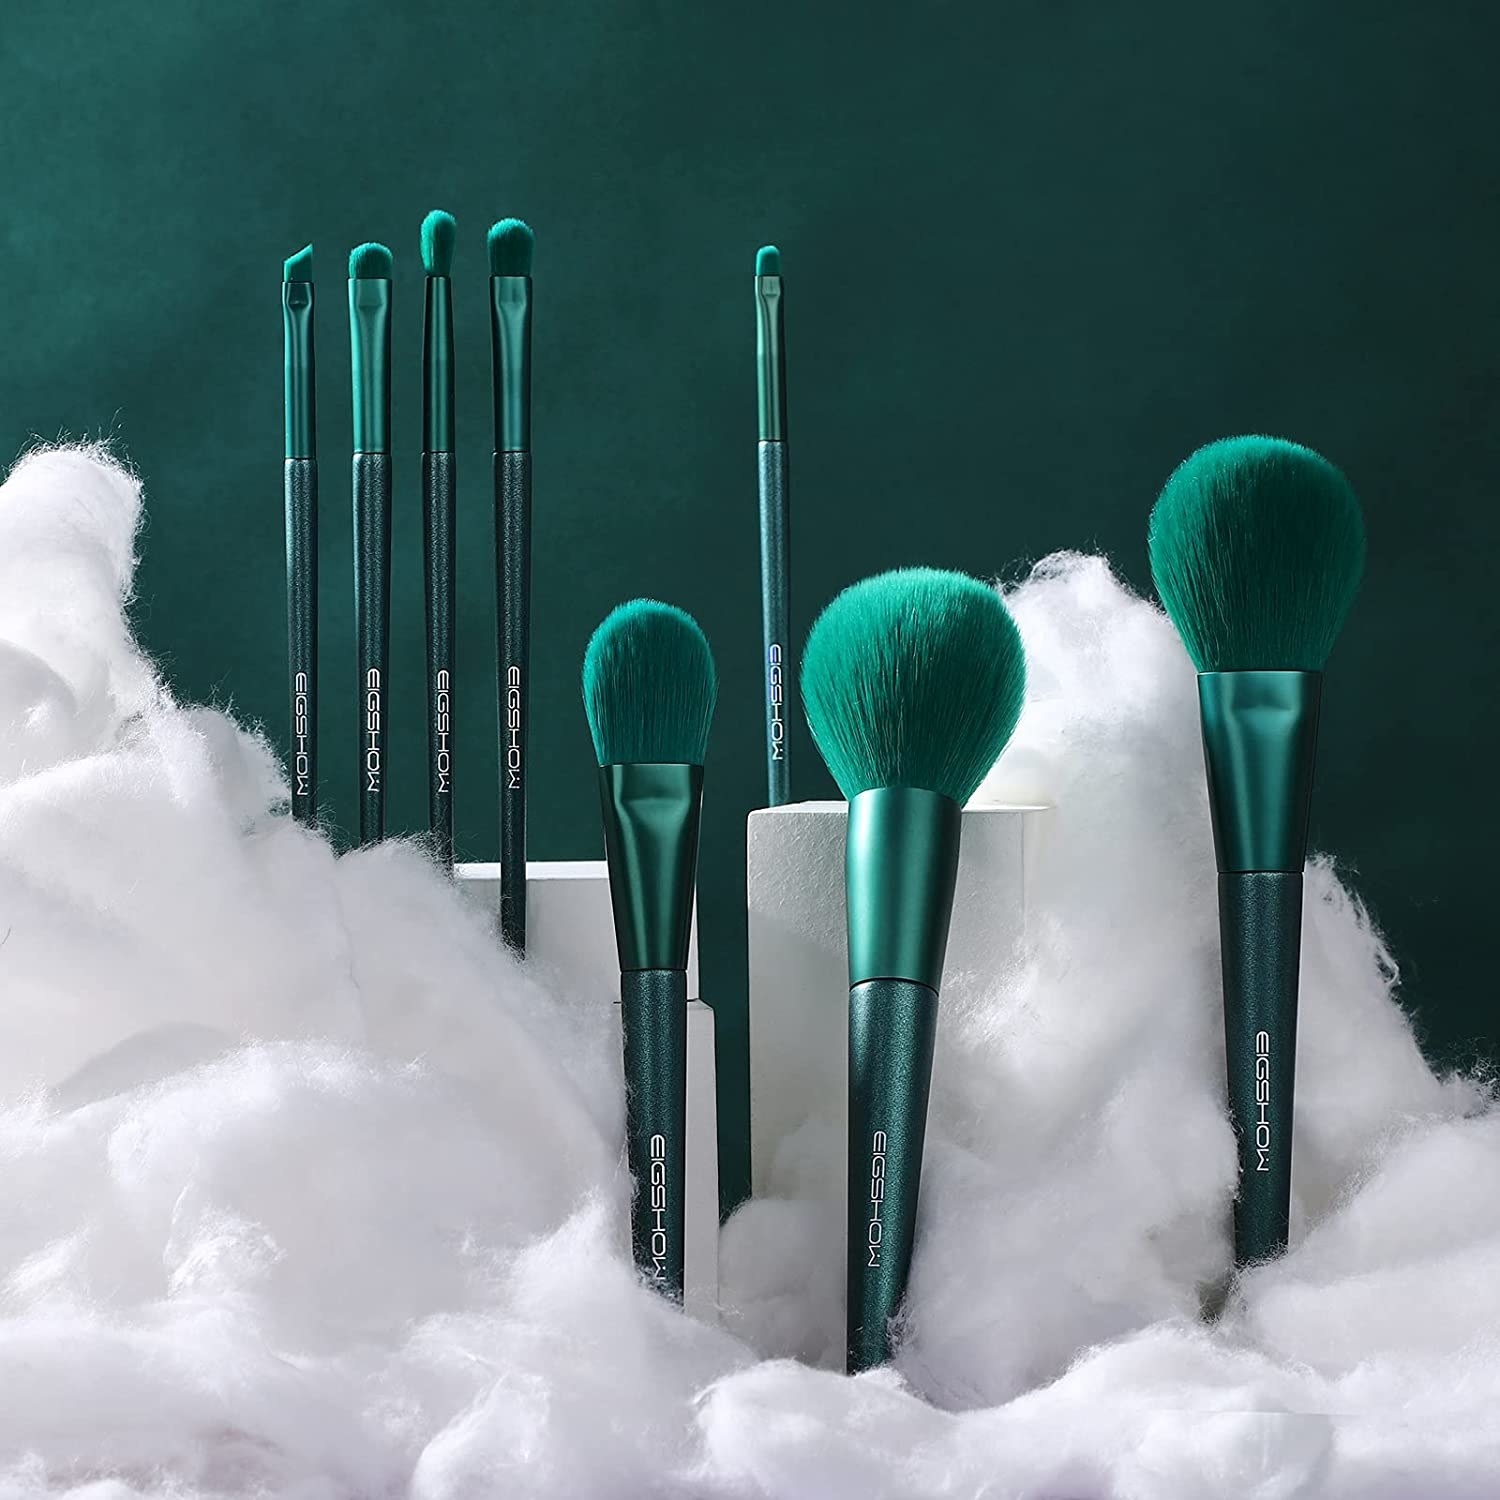 a set of the vegan makeup brushes